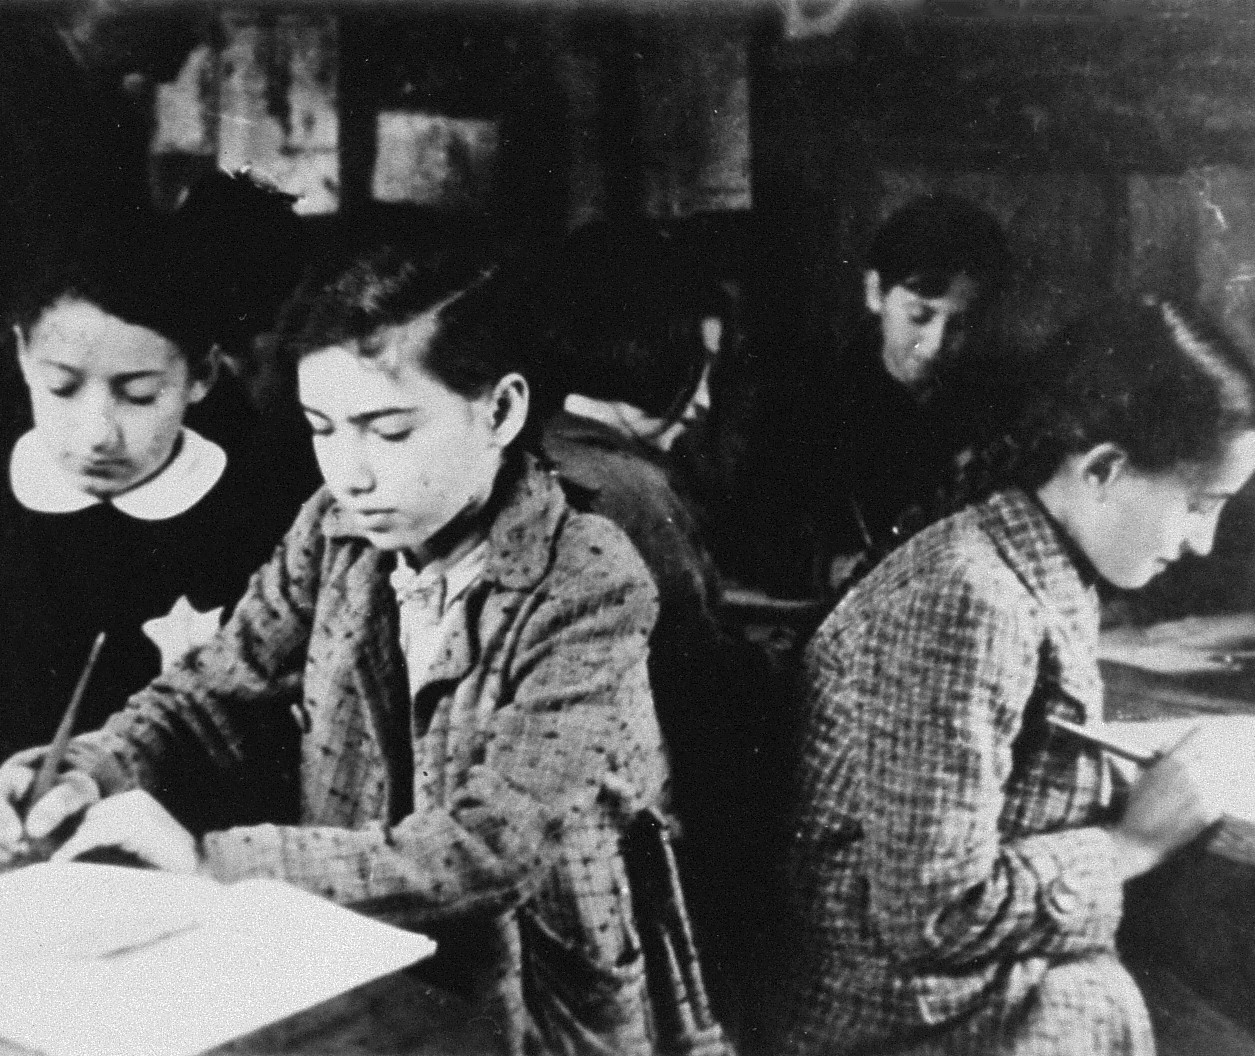 Students work at desks.